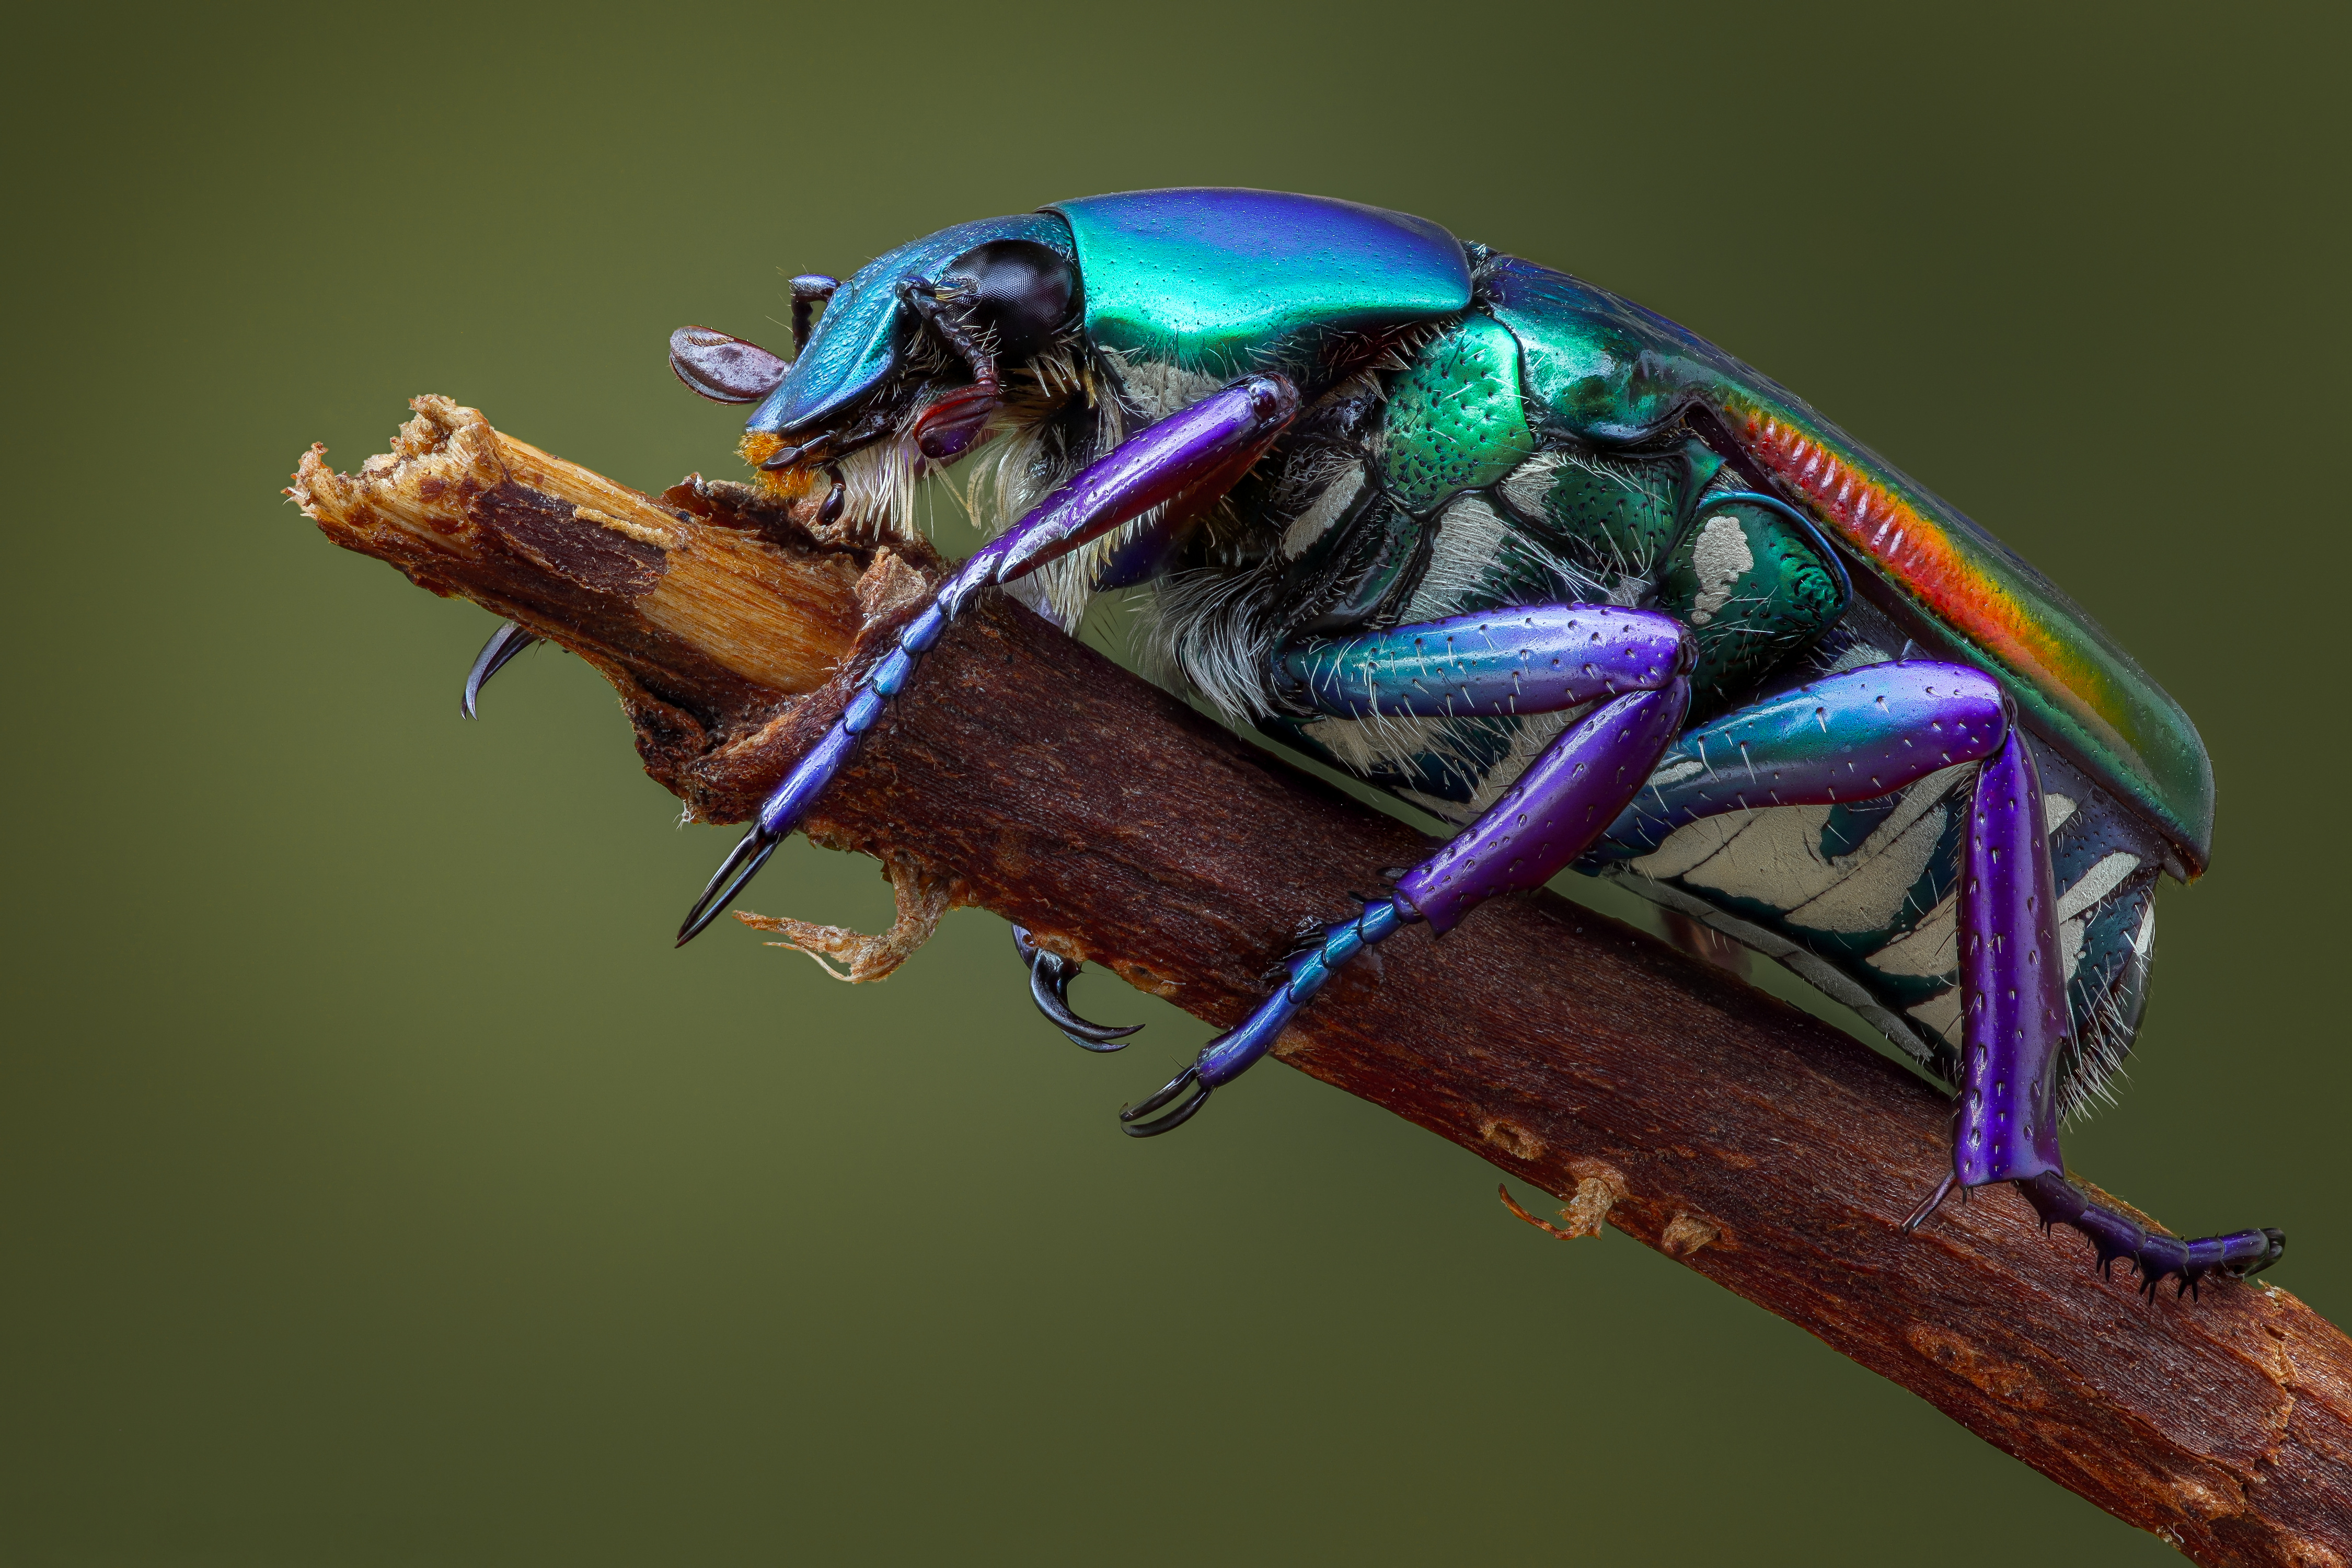 Bilder von Käfer Insekten pygora sanguineomarginata Tiere Großansicht 4500x3000 hautnah ein Tier Nahaufnahme